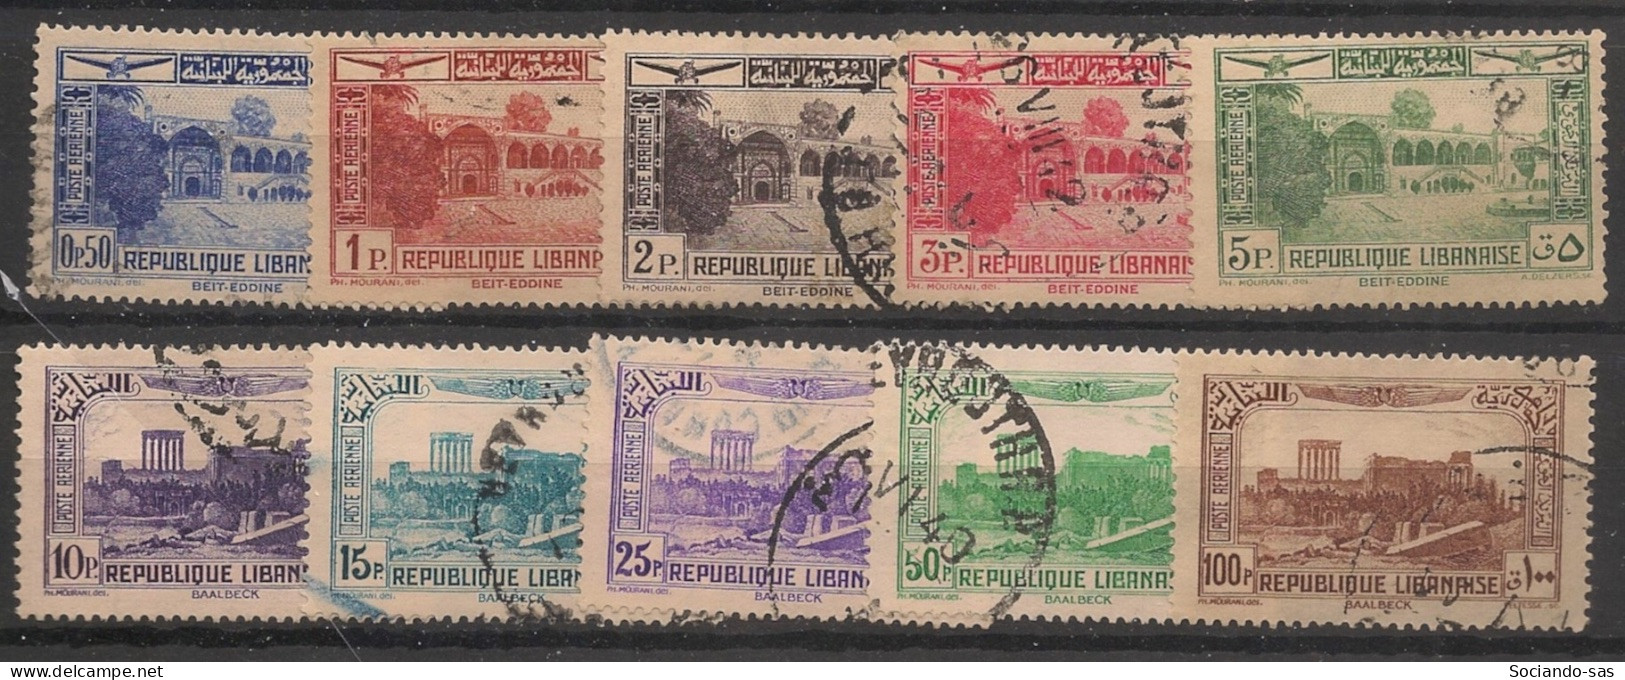 GRAND LIBAN - 1937-40 - Poste Aérienne PA N°YT. 65 à 74 - Série Complète - Oblitéré / Used - Oblitérés